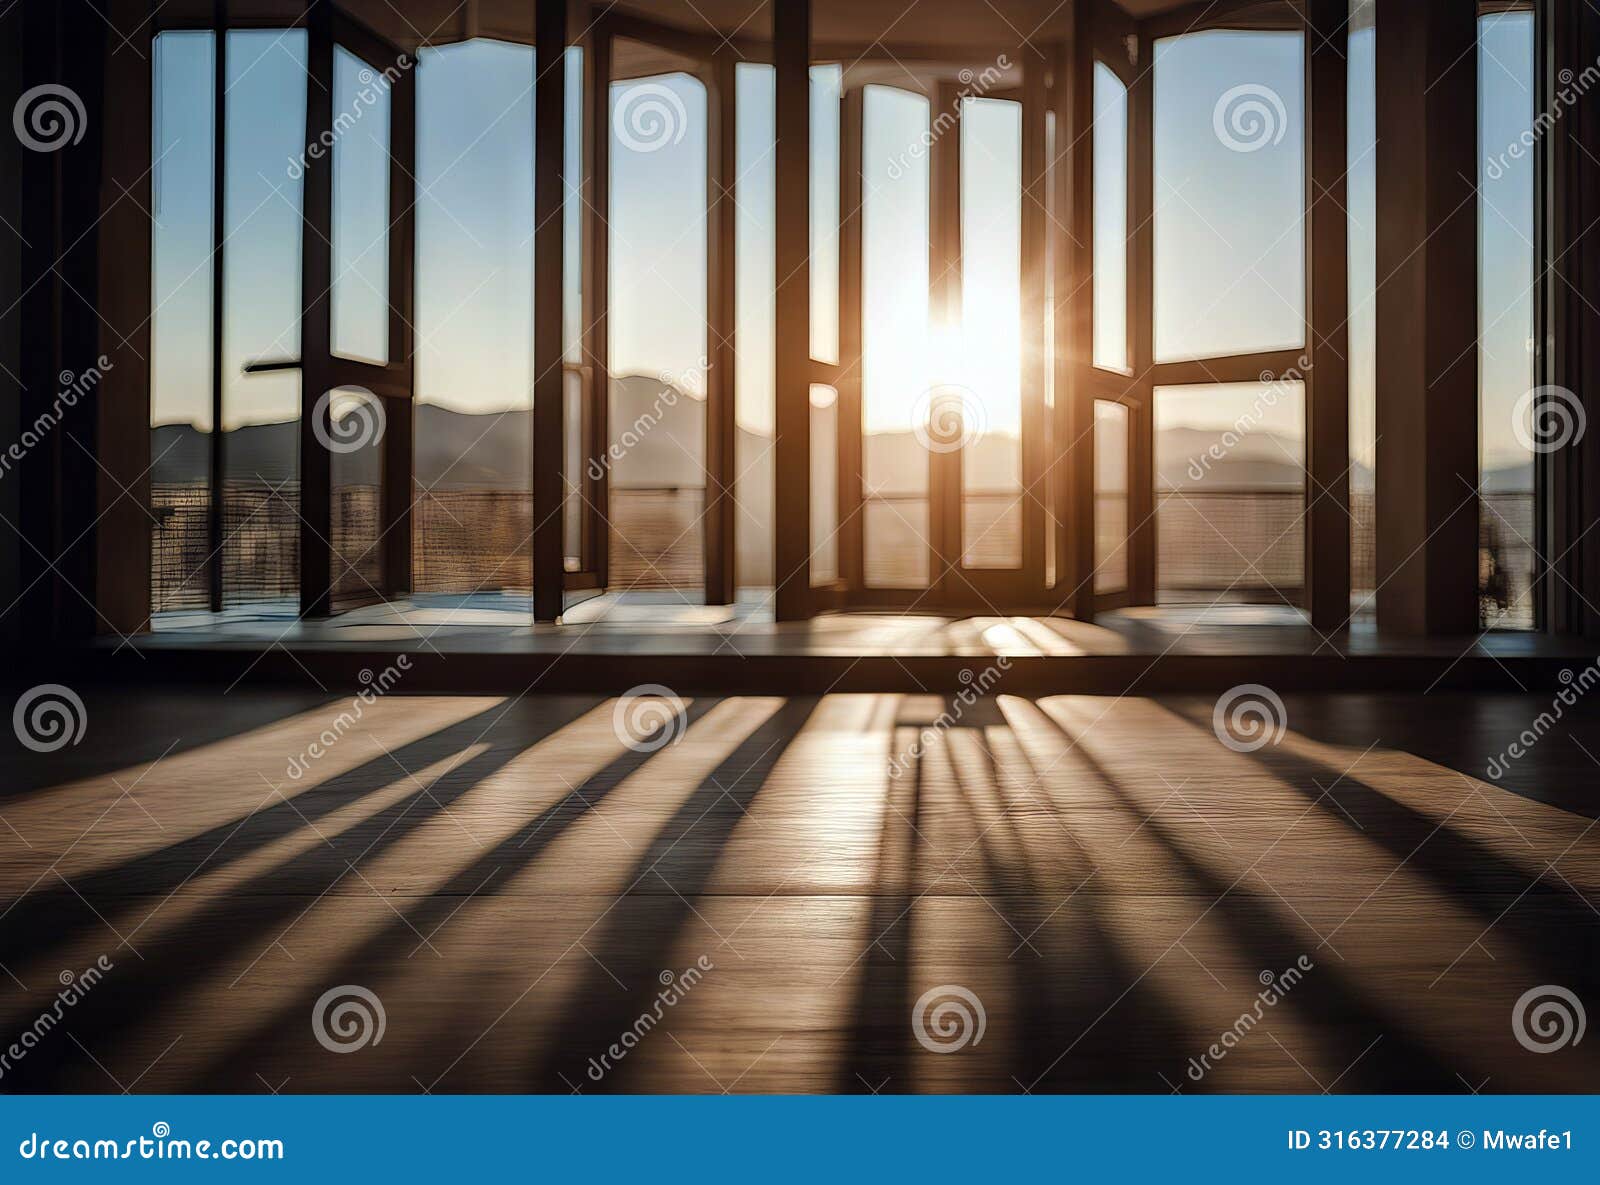 vacia suelo entrando pared sol por madera arquitecturainterior ventana casahabitaci?n del fondo blancaluz room blank wall indoor